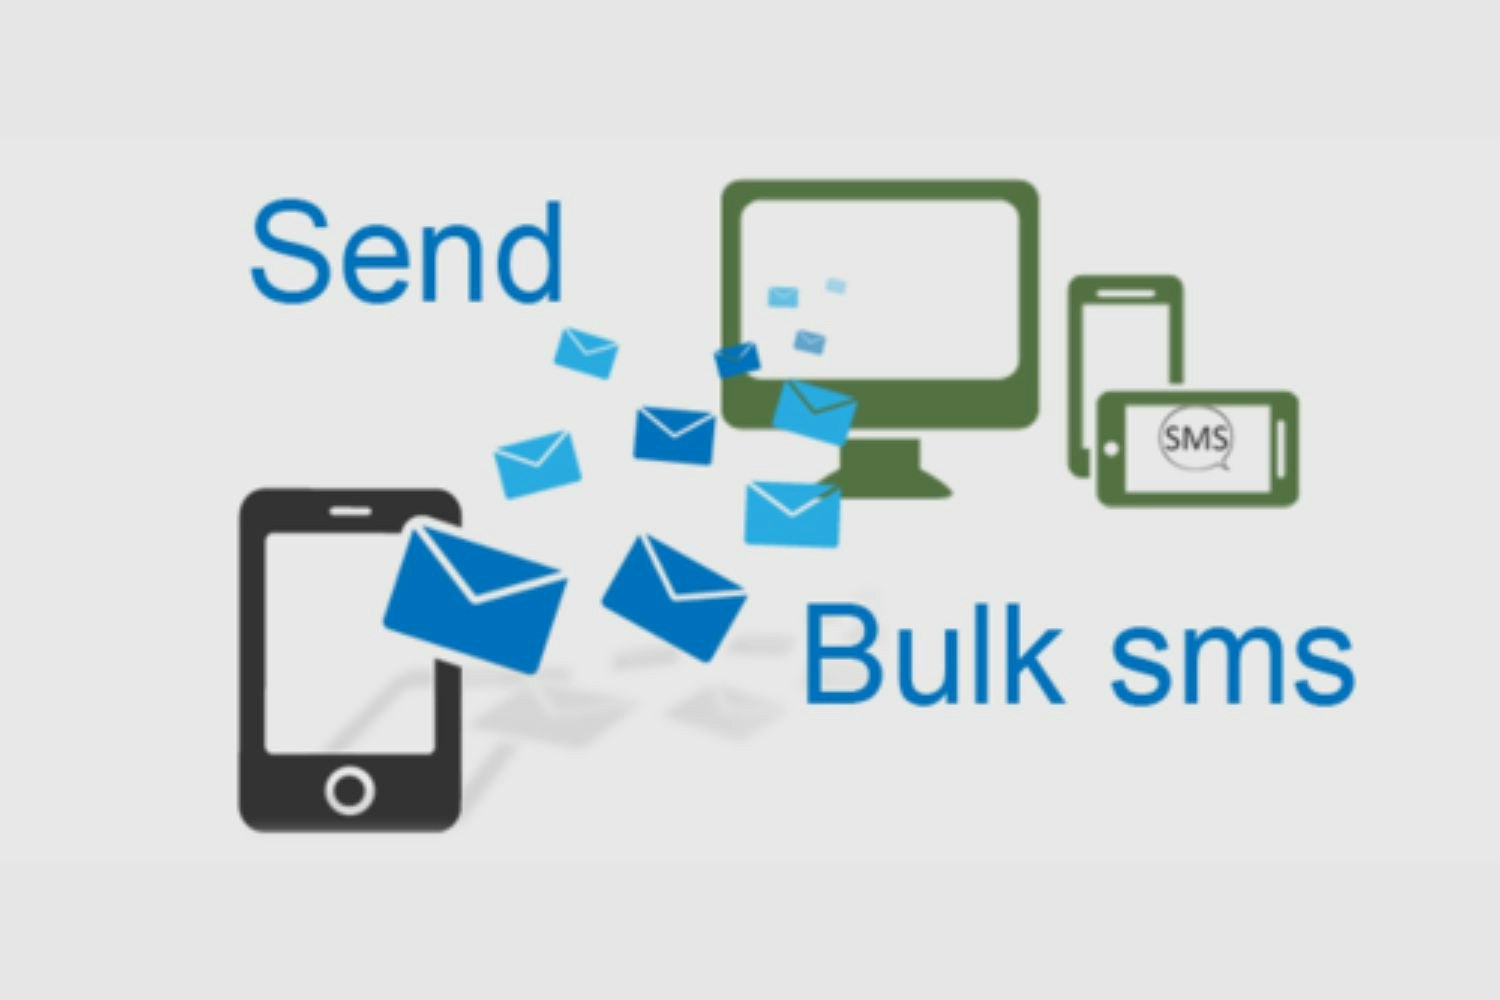 Send SMS. SMS Soft. Mass SMS. Was send sms